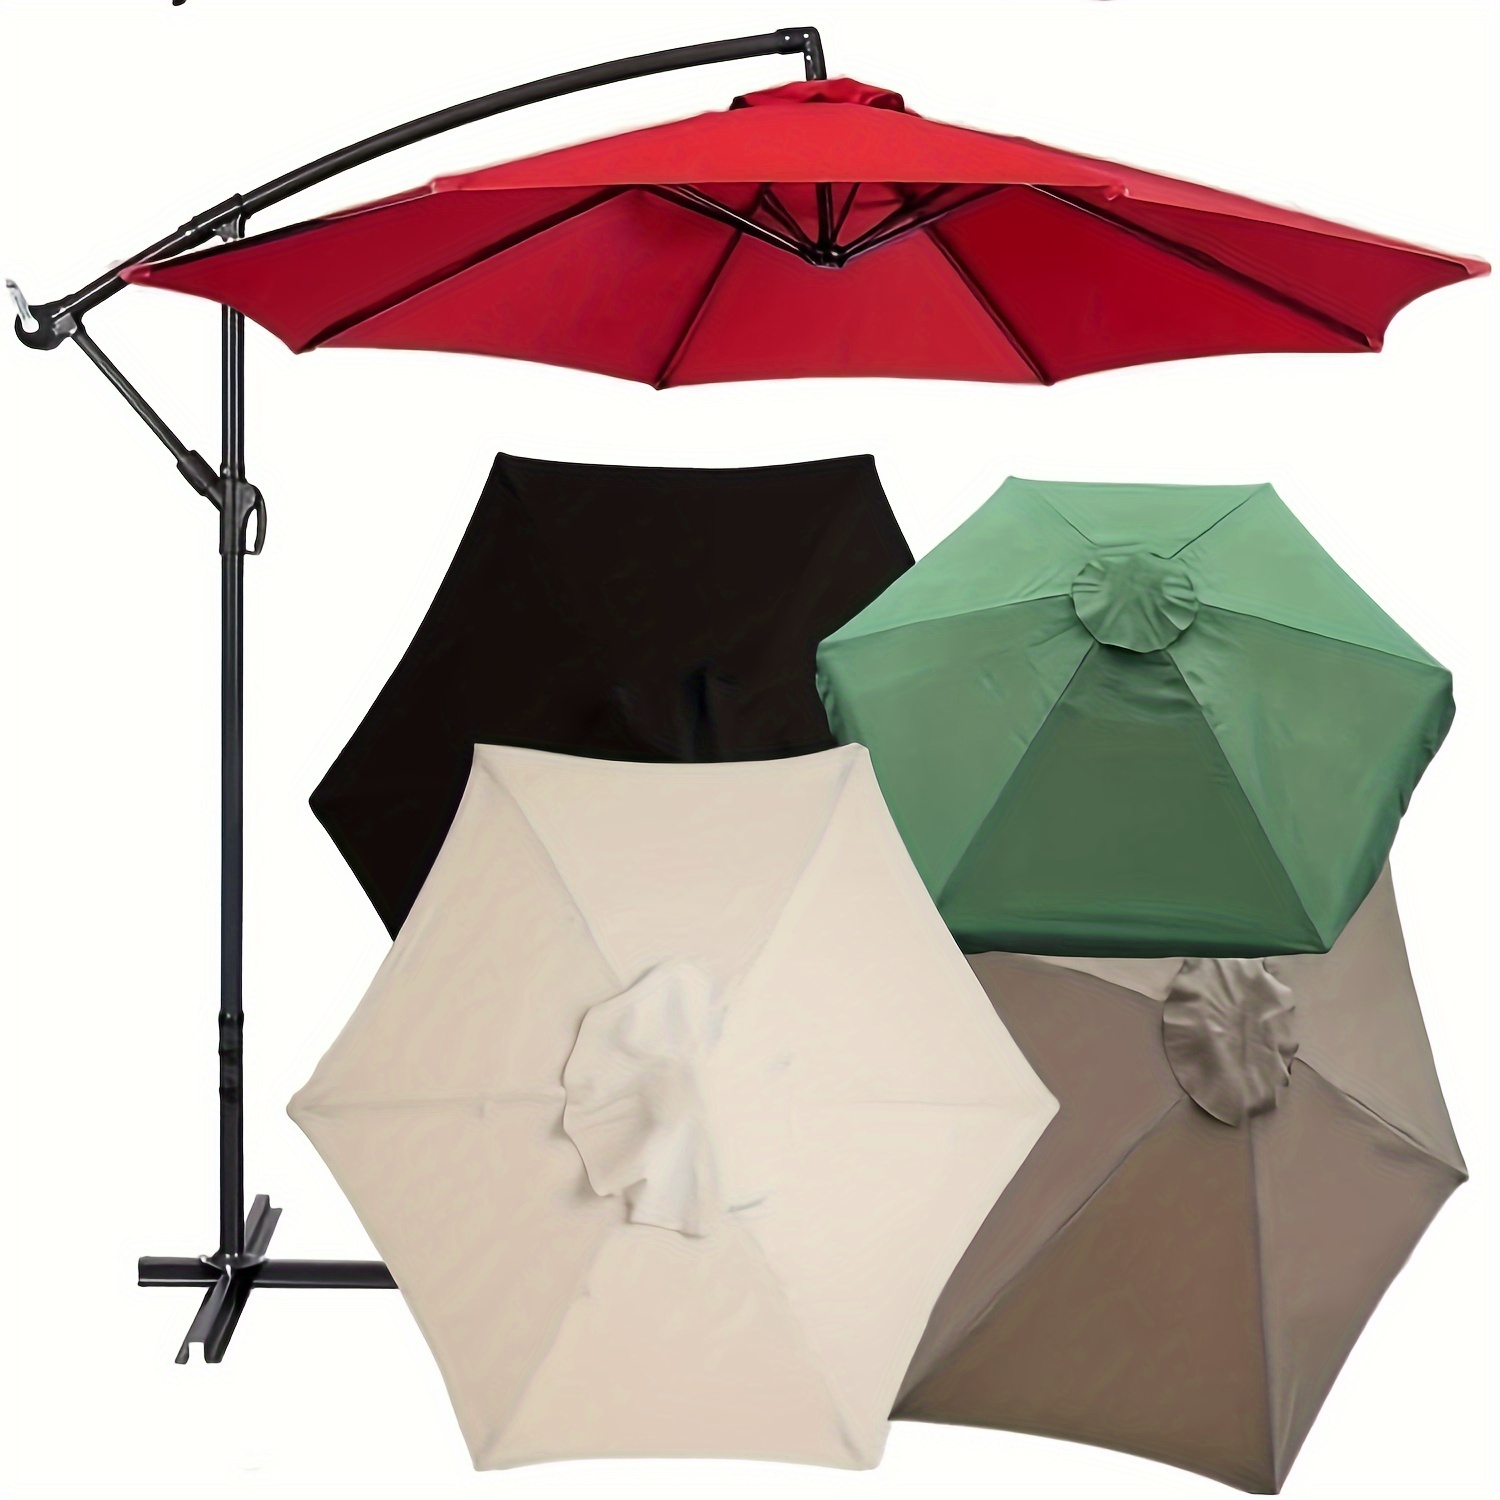 Loviver Patio Umbrella Accessories Outdoor Umbrella Accessories Parasol Hand Knob Outdoor Umbrella Cord Line Umbrella Replacement Parts for Picnic Cord Fixed